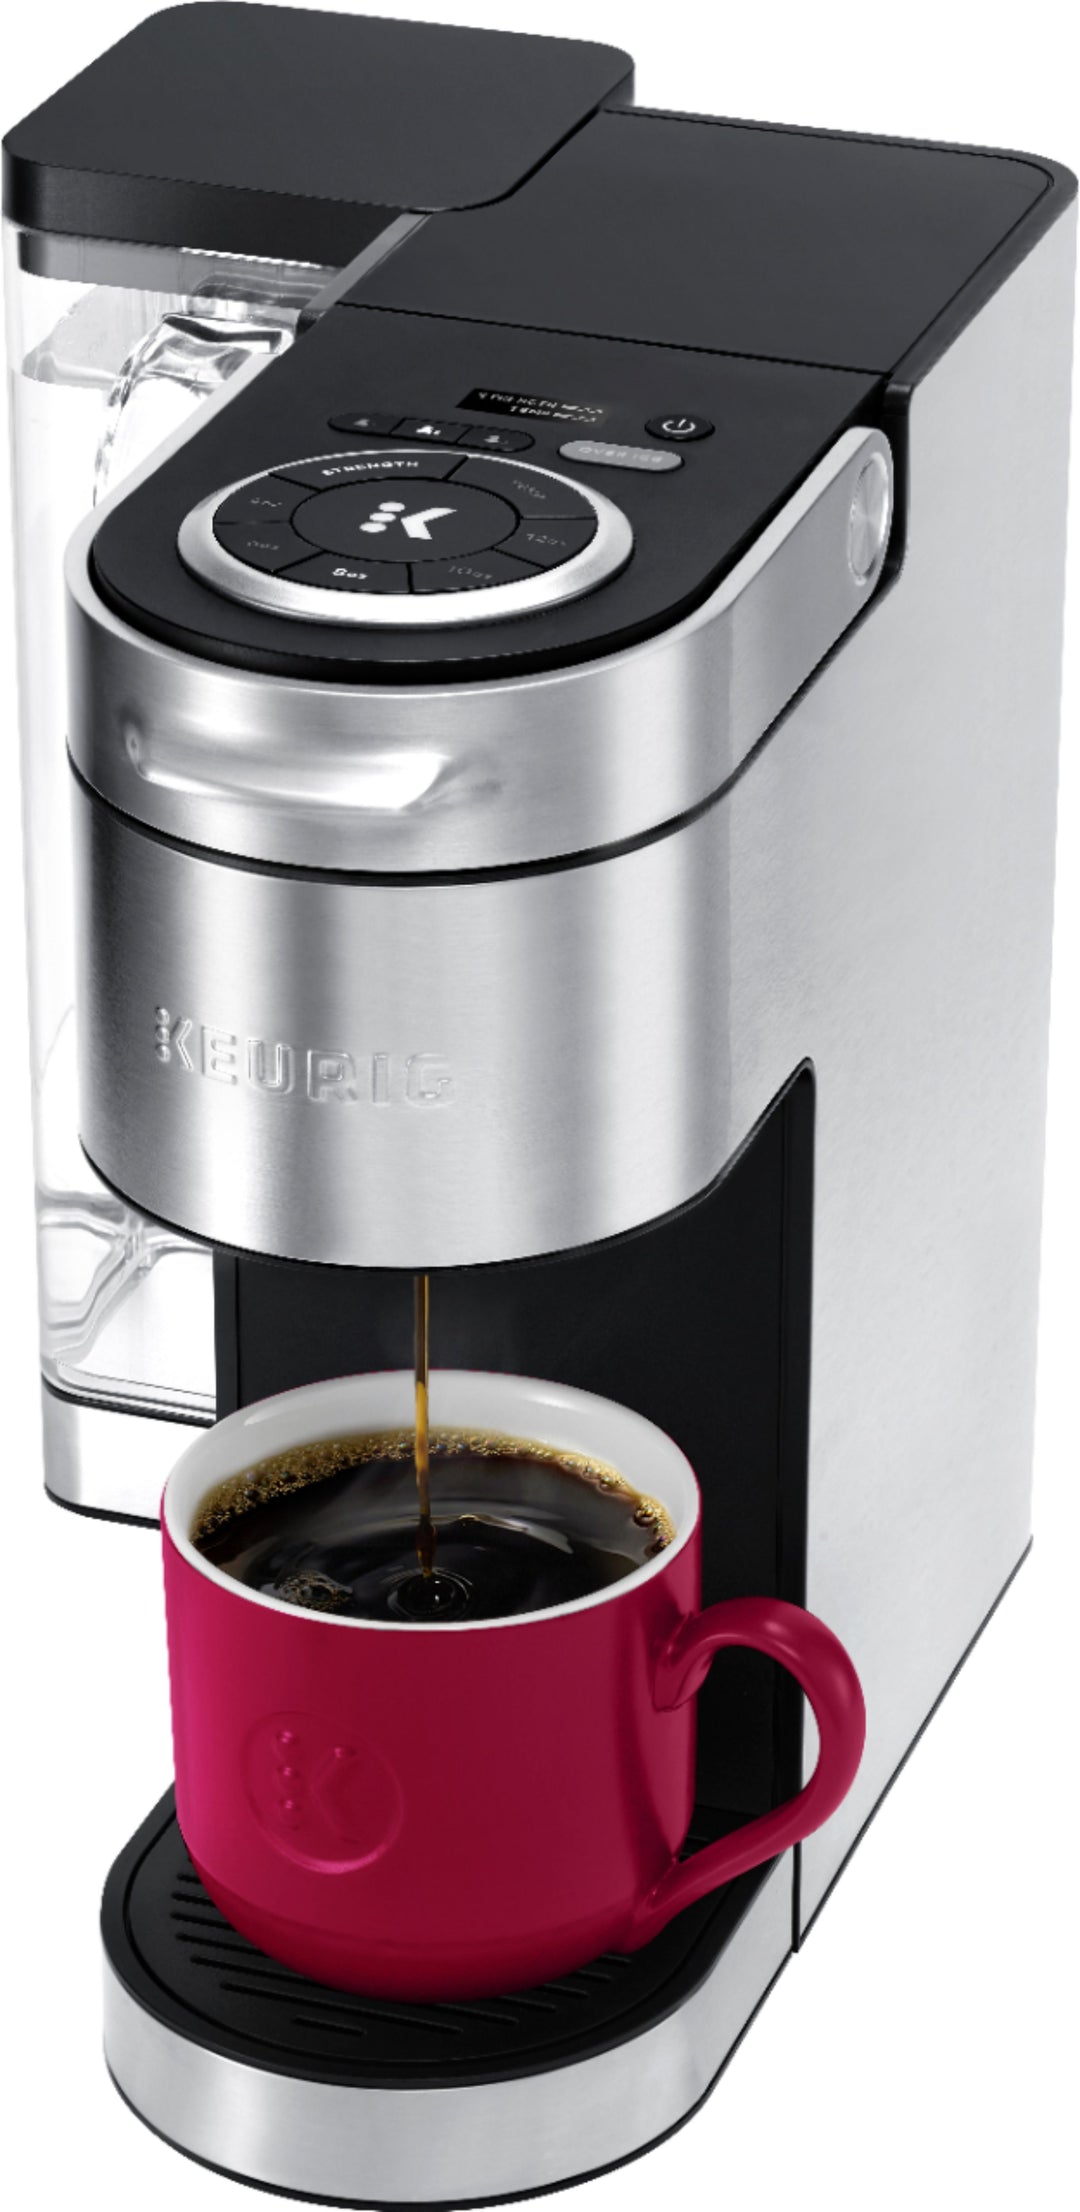 Keurig - K-Supreme Plus Coffee Maker - Stainless Steel_1